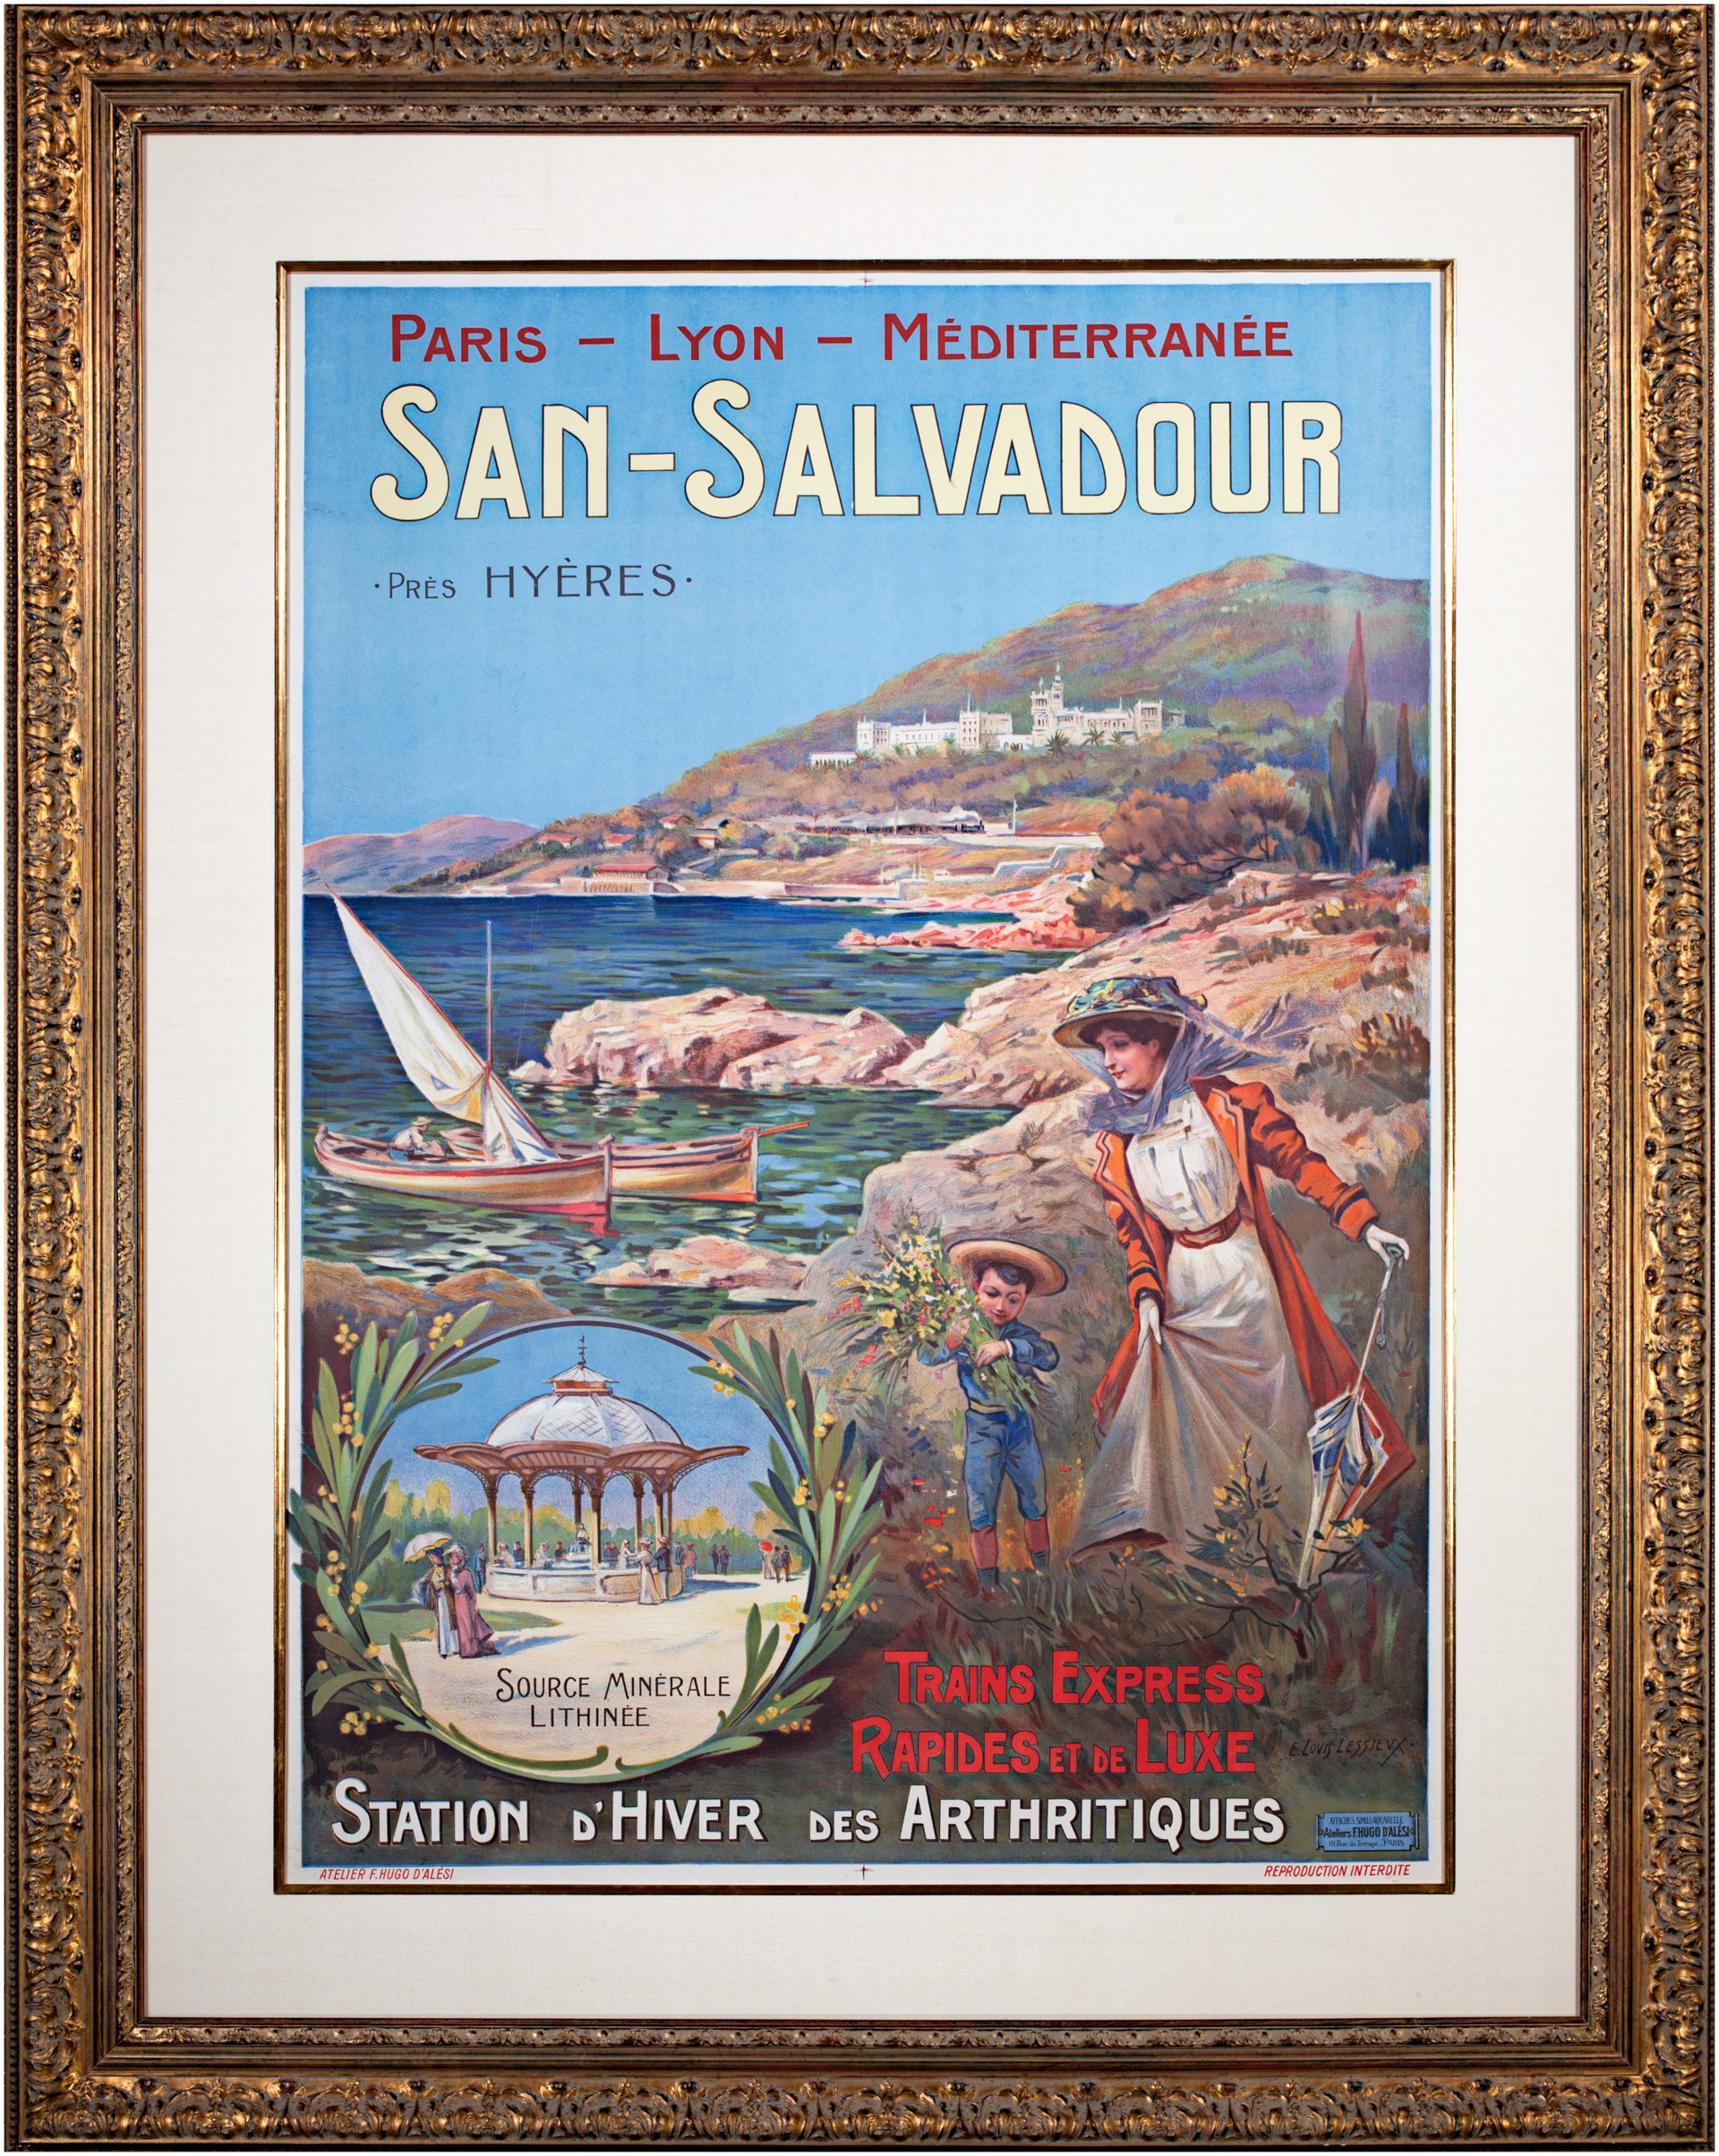 San-Salvadour: Station d'Hiver des Arthritiques by Ernest Louis Lessieux